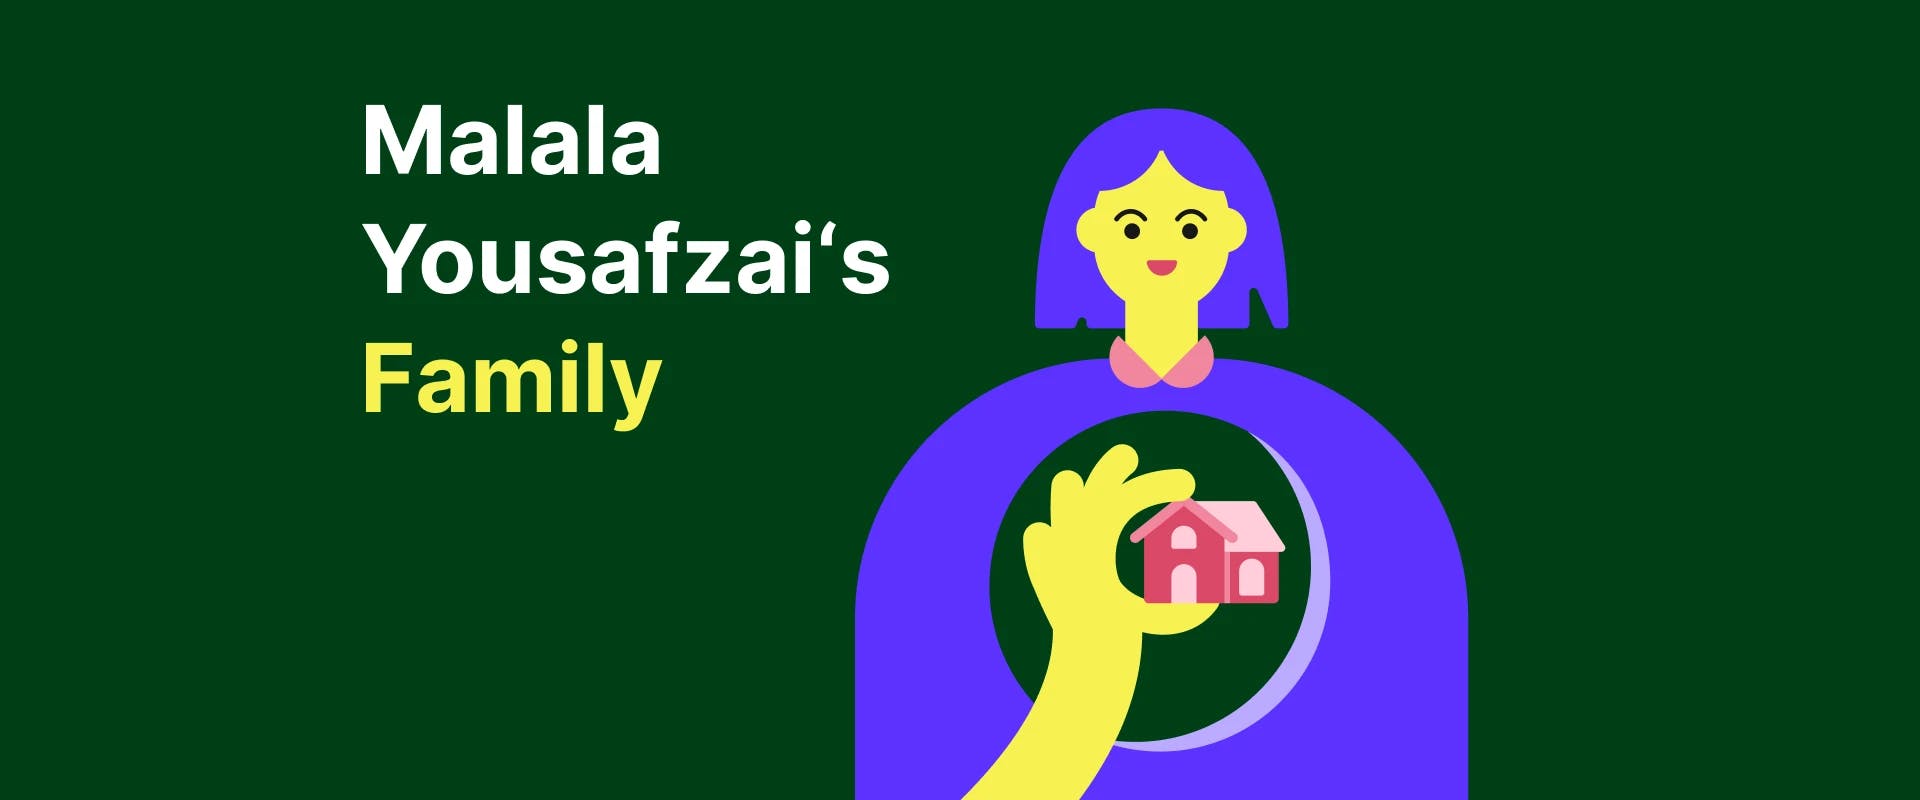 malala_yousafzai_family